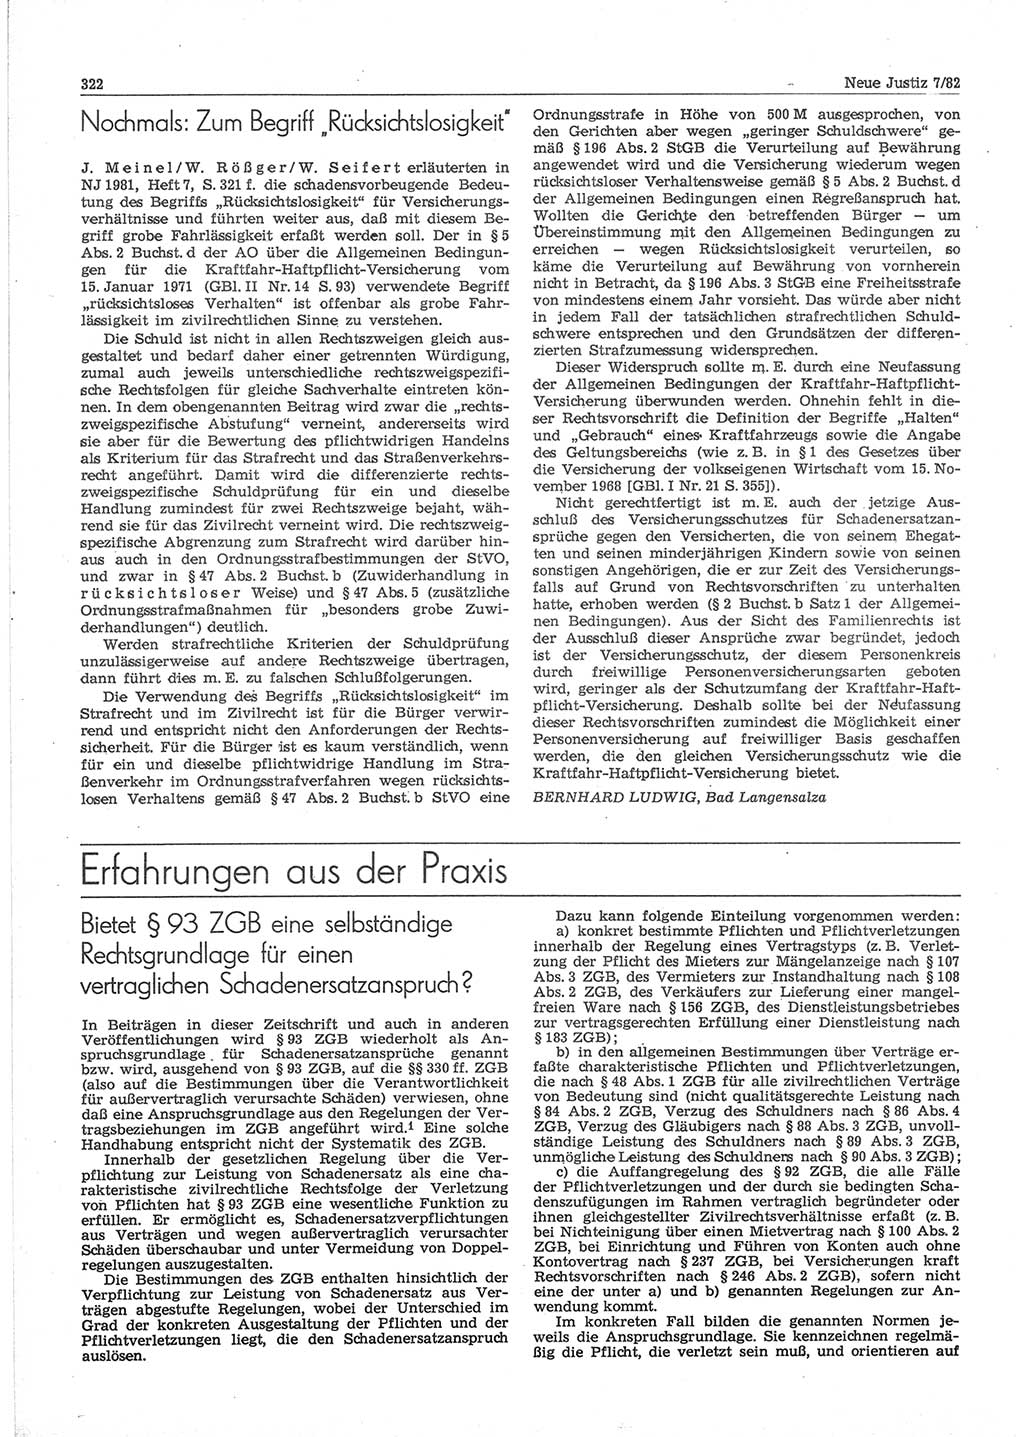 Neue Justiz (NJ), Zeitschrift für sozialistisches Recht und Gesetzlichkeit [Deutsche Demokratische Republik (DDR)], 36. Jahrgang 1982, Seite 322 (NJ DDR 1982, S. 322)